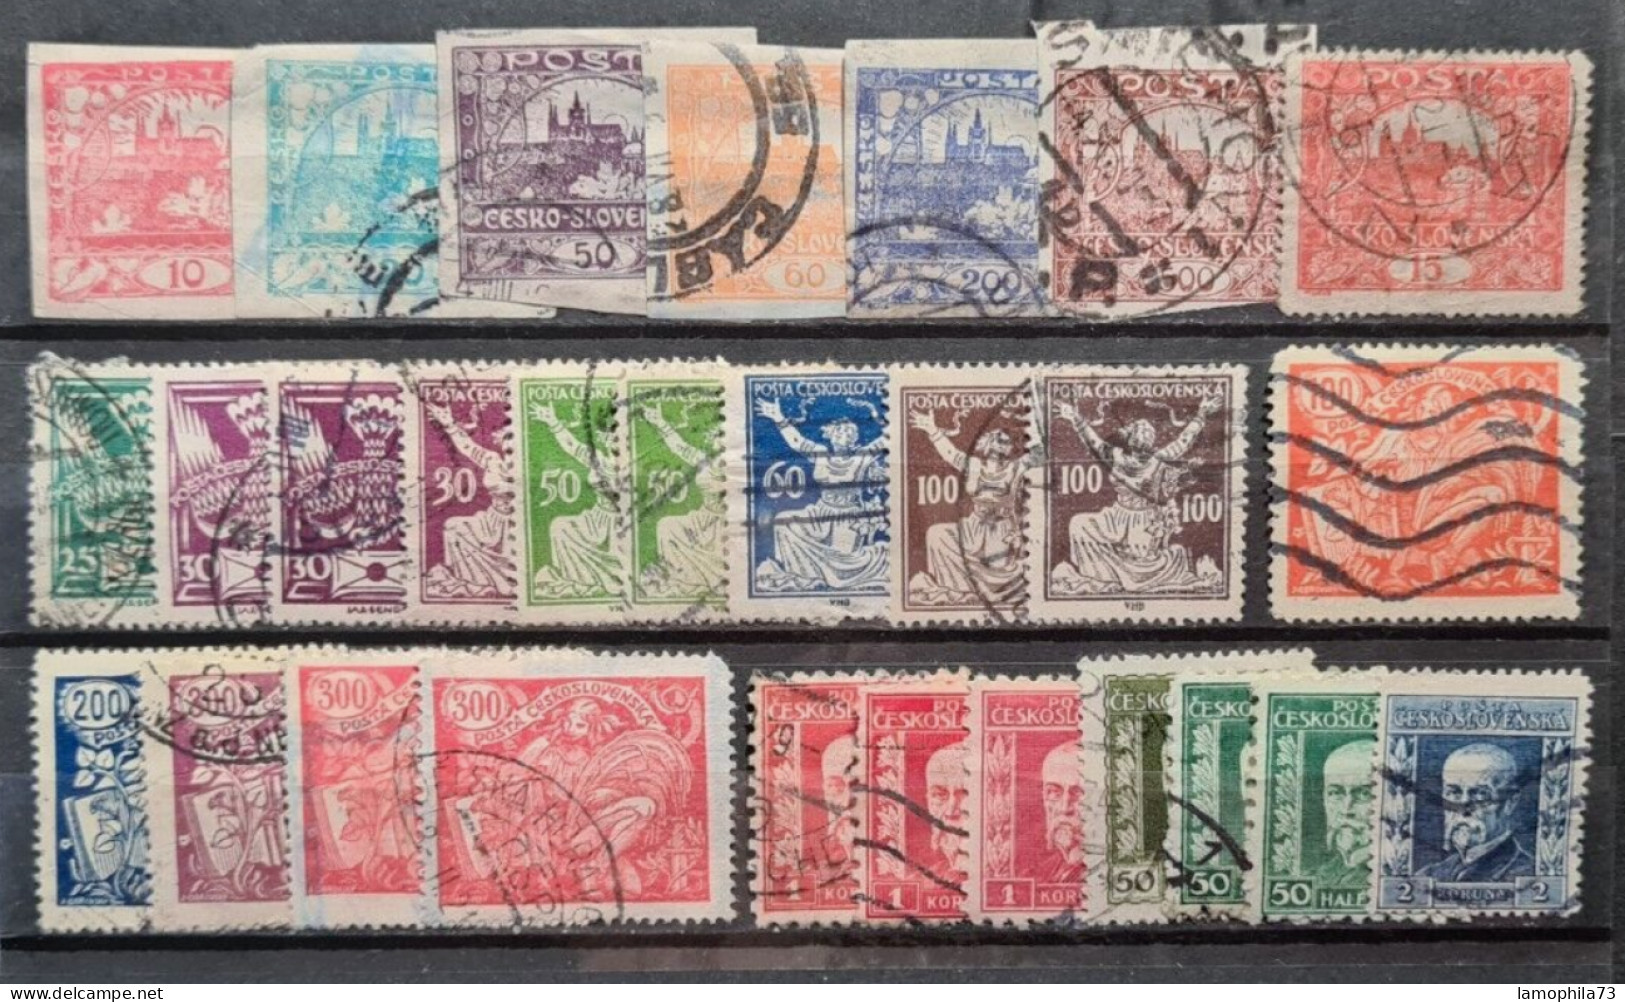 Tchecoslovakia - Stamp(s) G/V-Good - (O) - 1 Scan(s) Réf-1730 - Usati